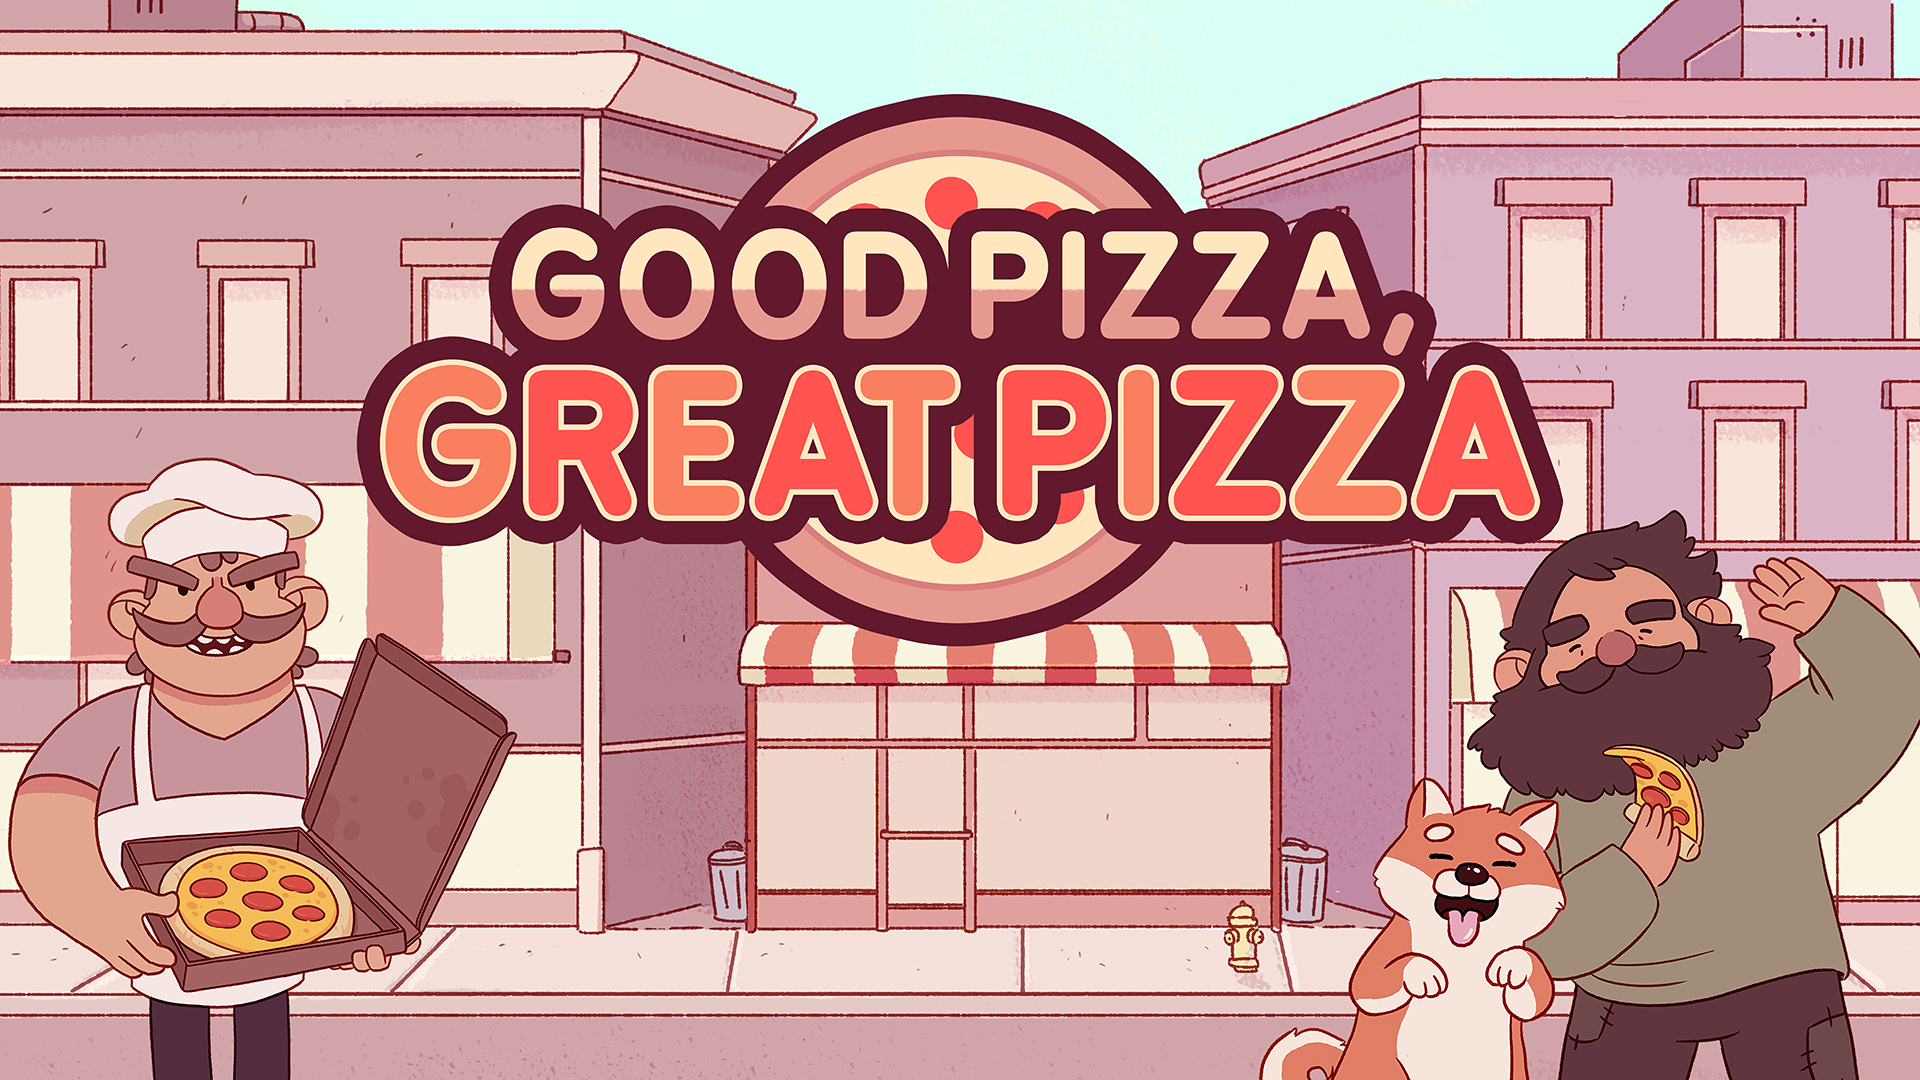 Baixar & Jogar Good Pizza, Great Pizza no PC & Mac (Emulador)